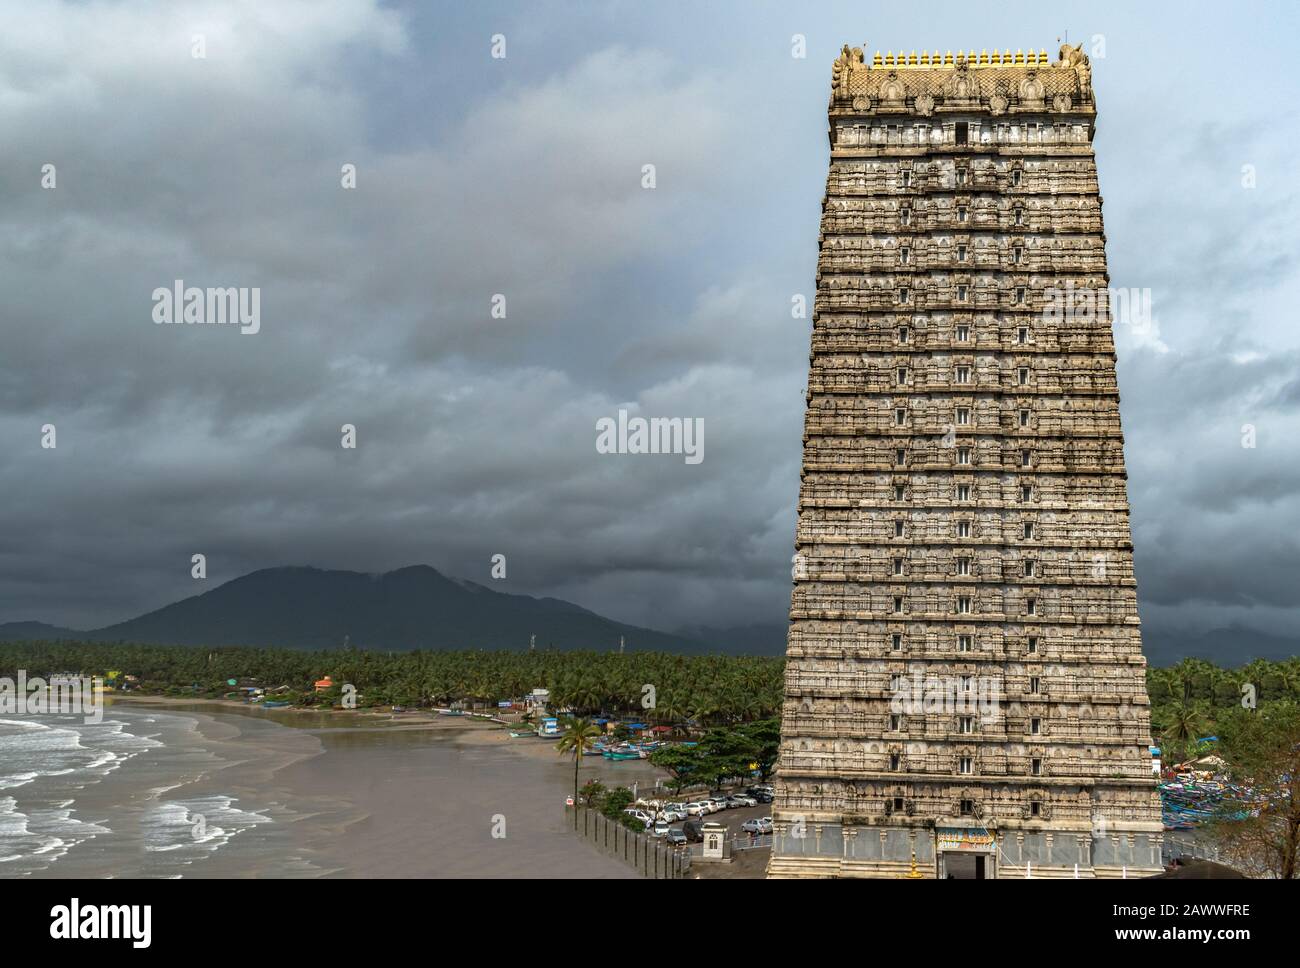 Architettura medievale India dravidian di Gopuram, famoso in tutto il mondo, a 20 piani, una torre d'ingresso del Tempio di Lord Shiva a Murdeshwara durante la stagione delle piogge. Foto Stock